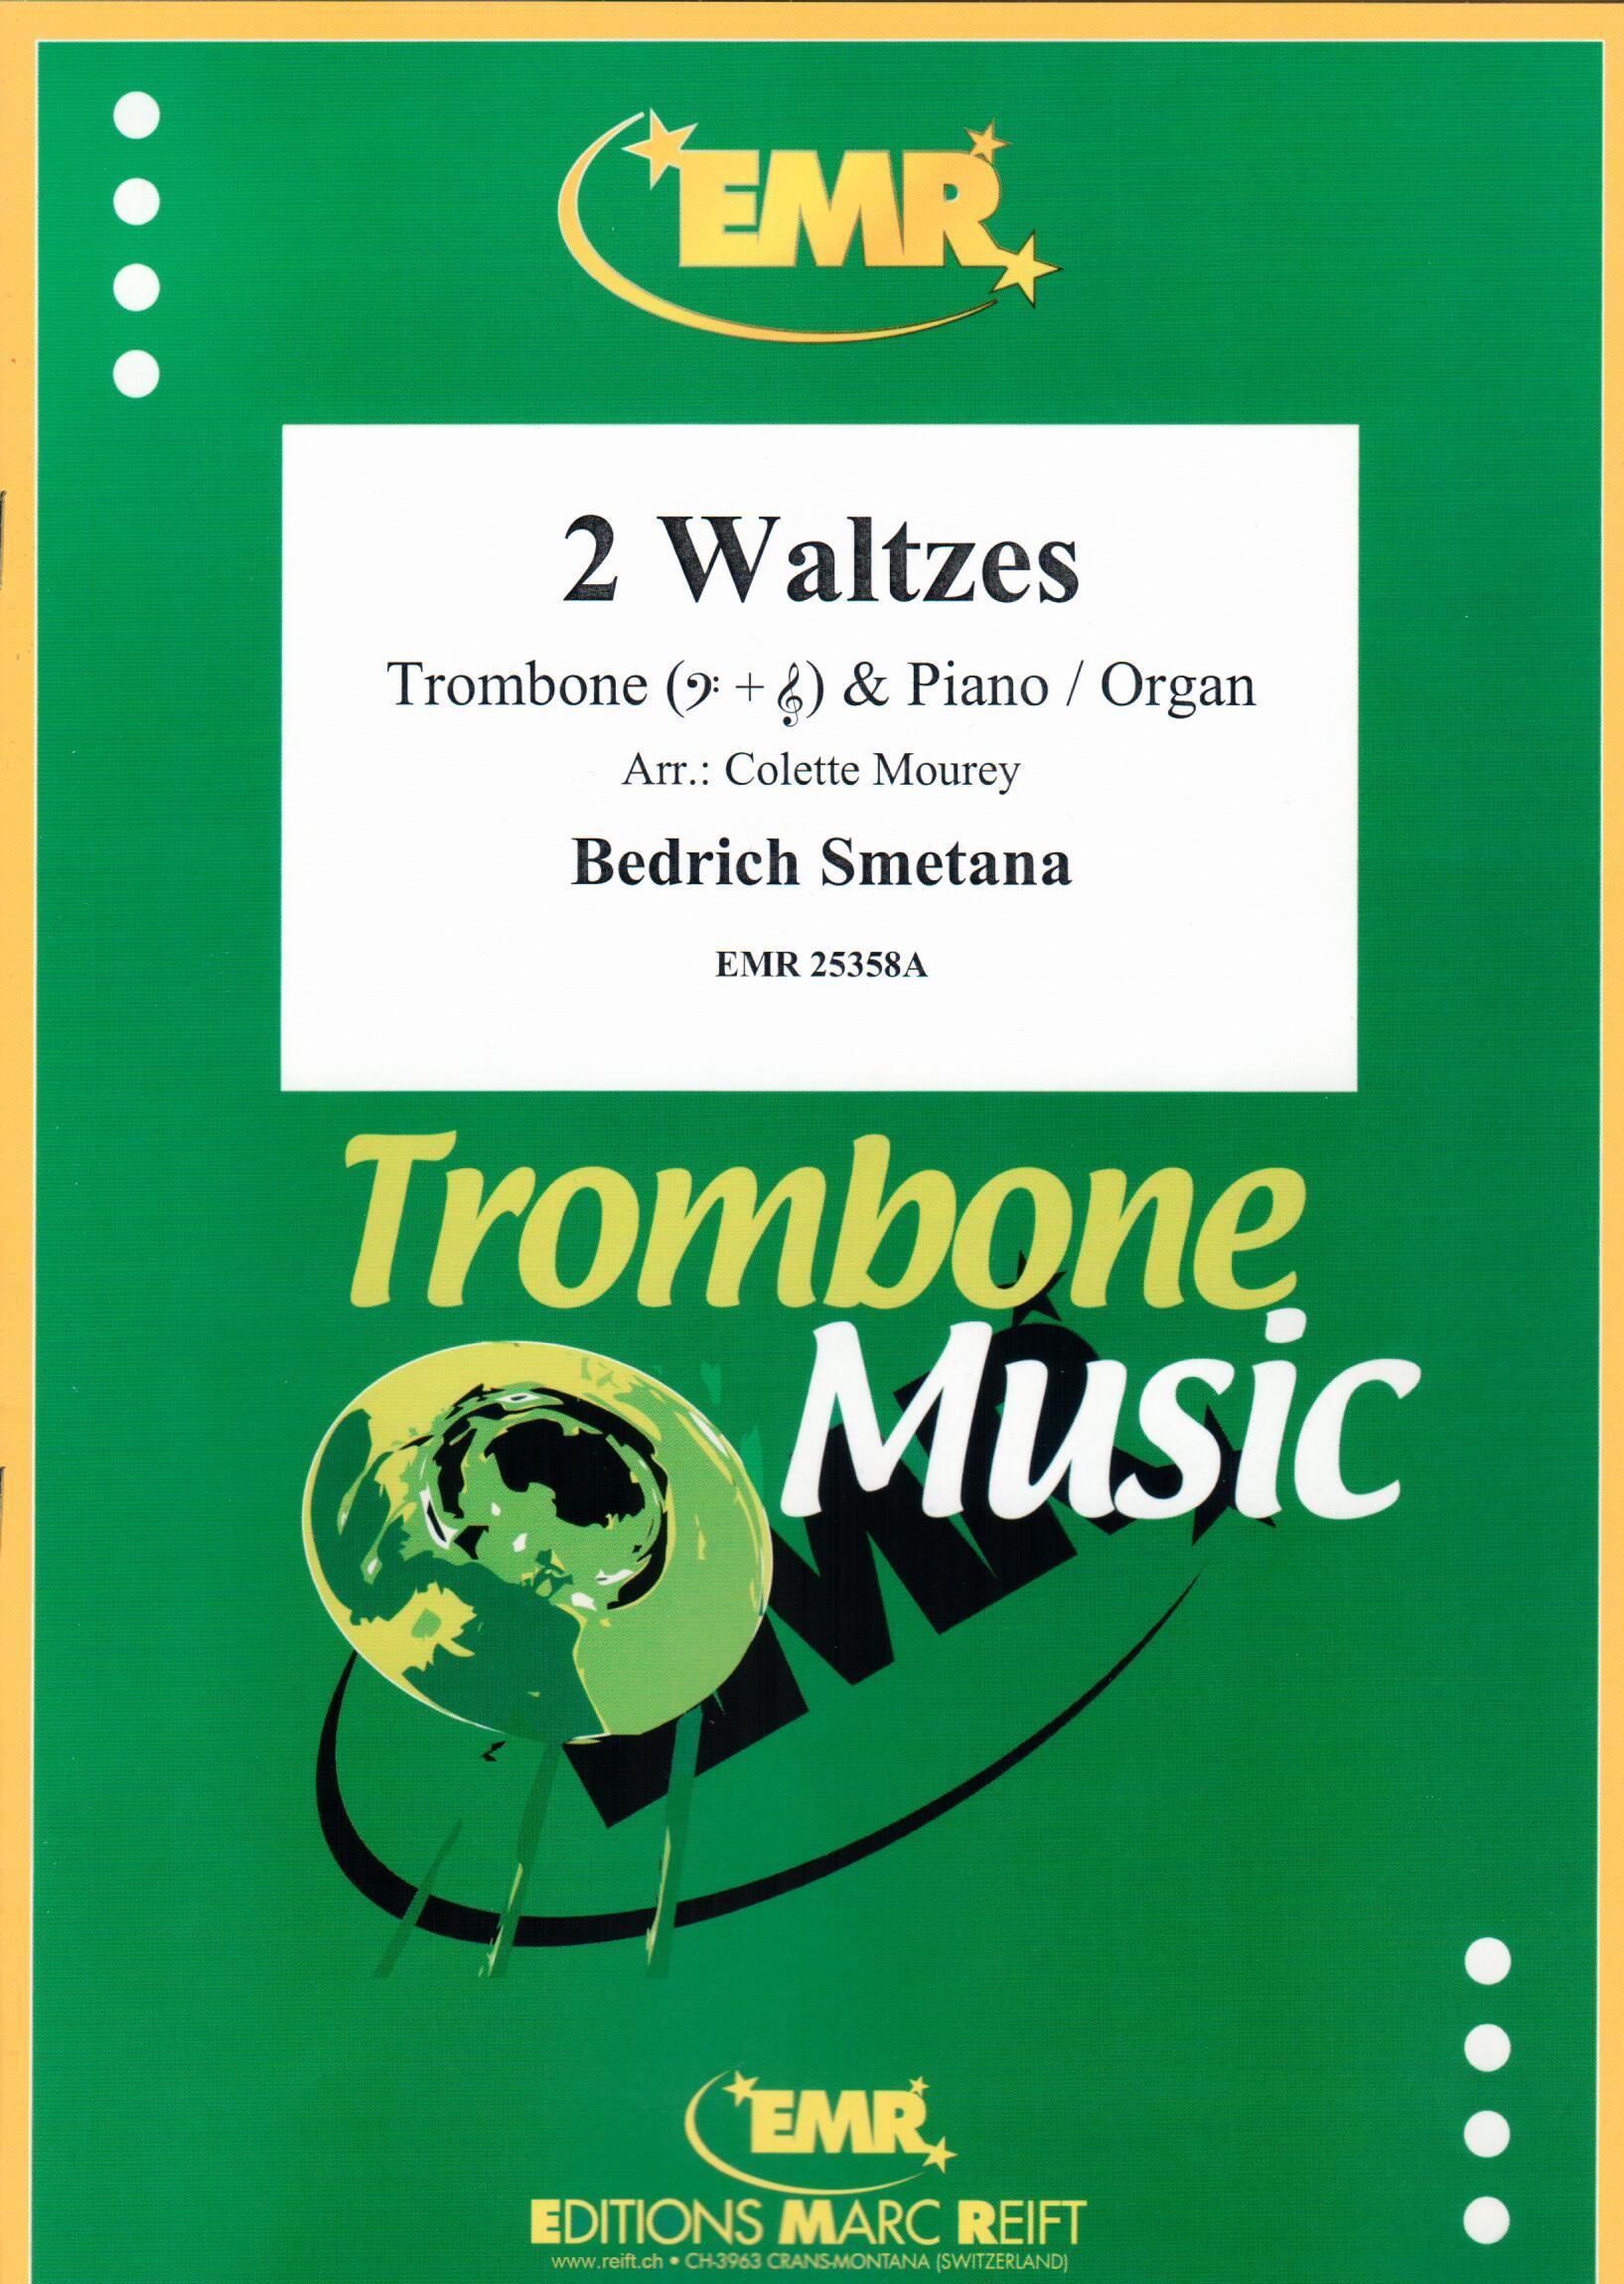 2 WALTZES, SOLOS - Trombone